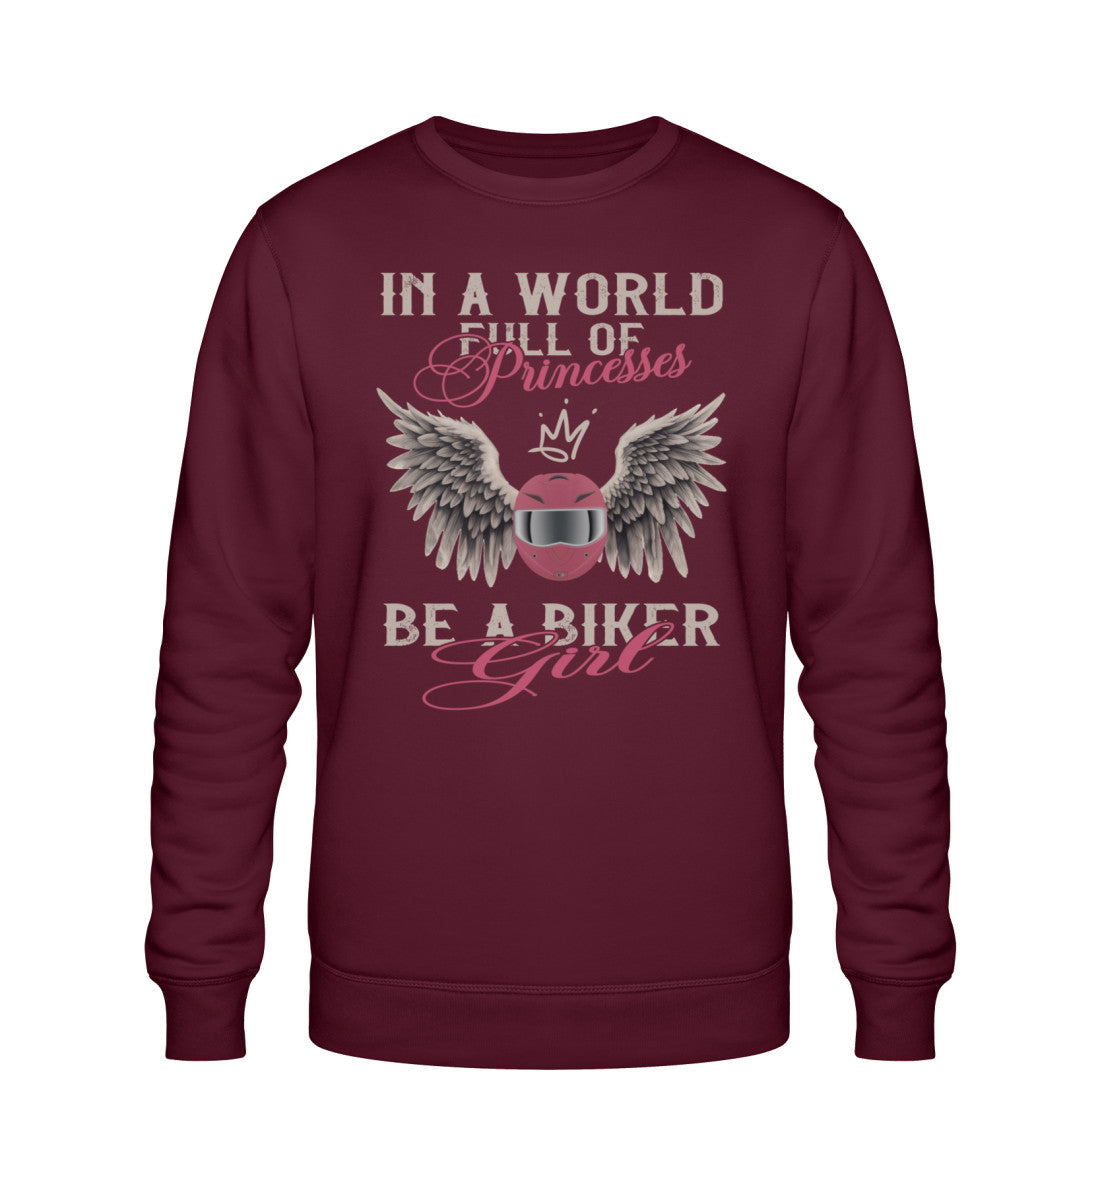 Ein Bikerin Sweatshirt für Motorradfahrerinnen von Wingbikers mit dem Aufdruck, In A World Full Of Princesses, Be A Biker Girl, in burgunder. 